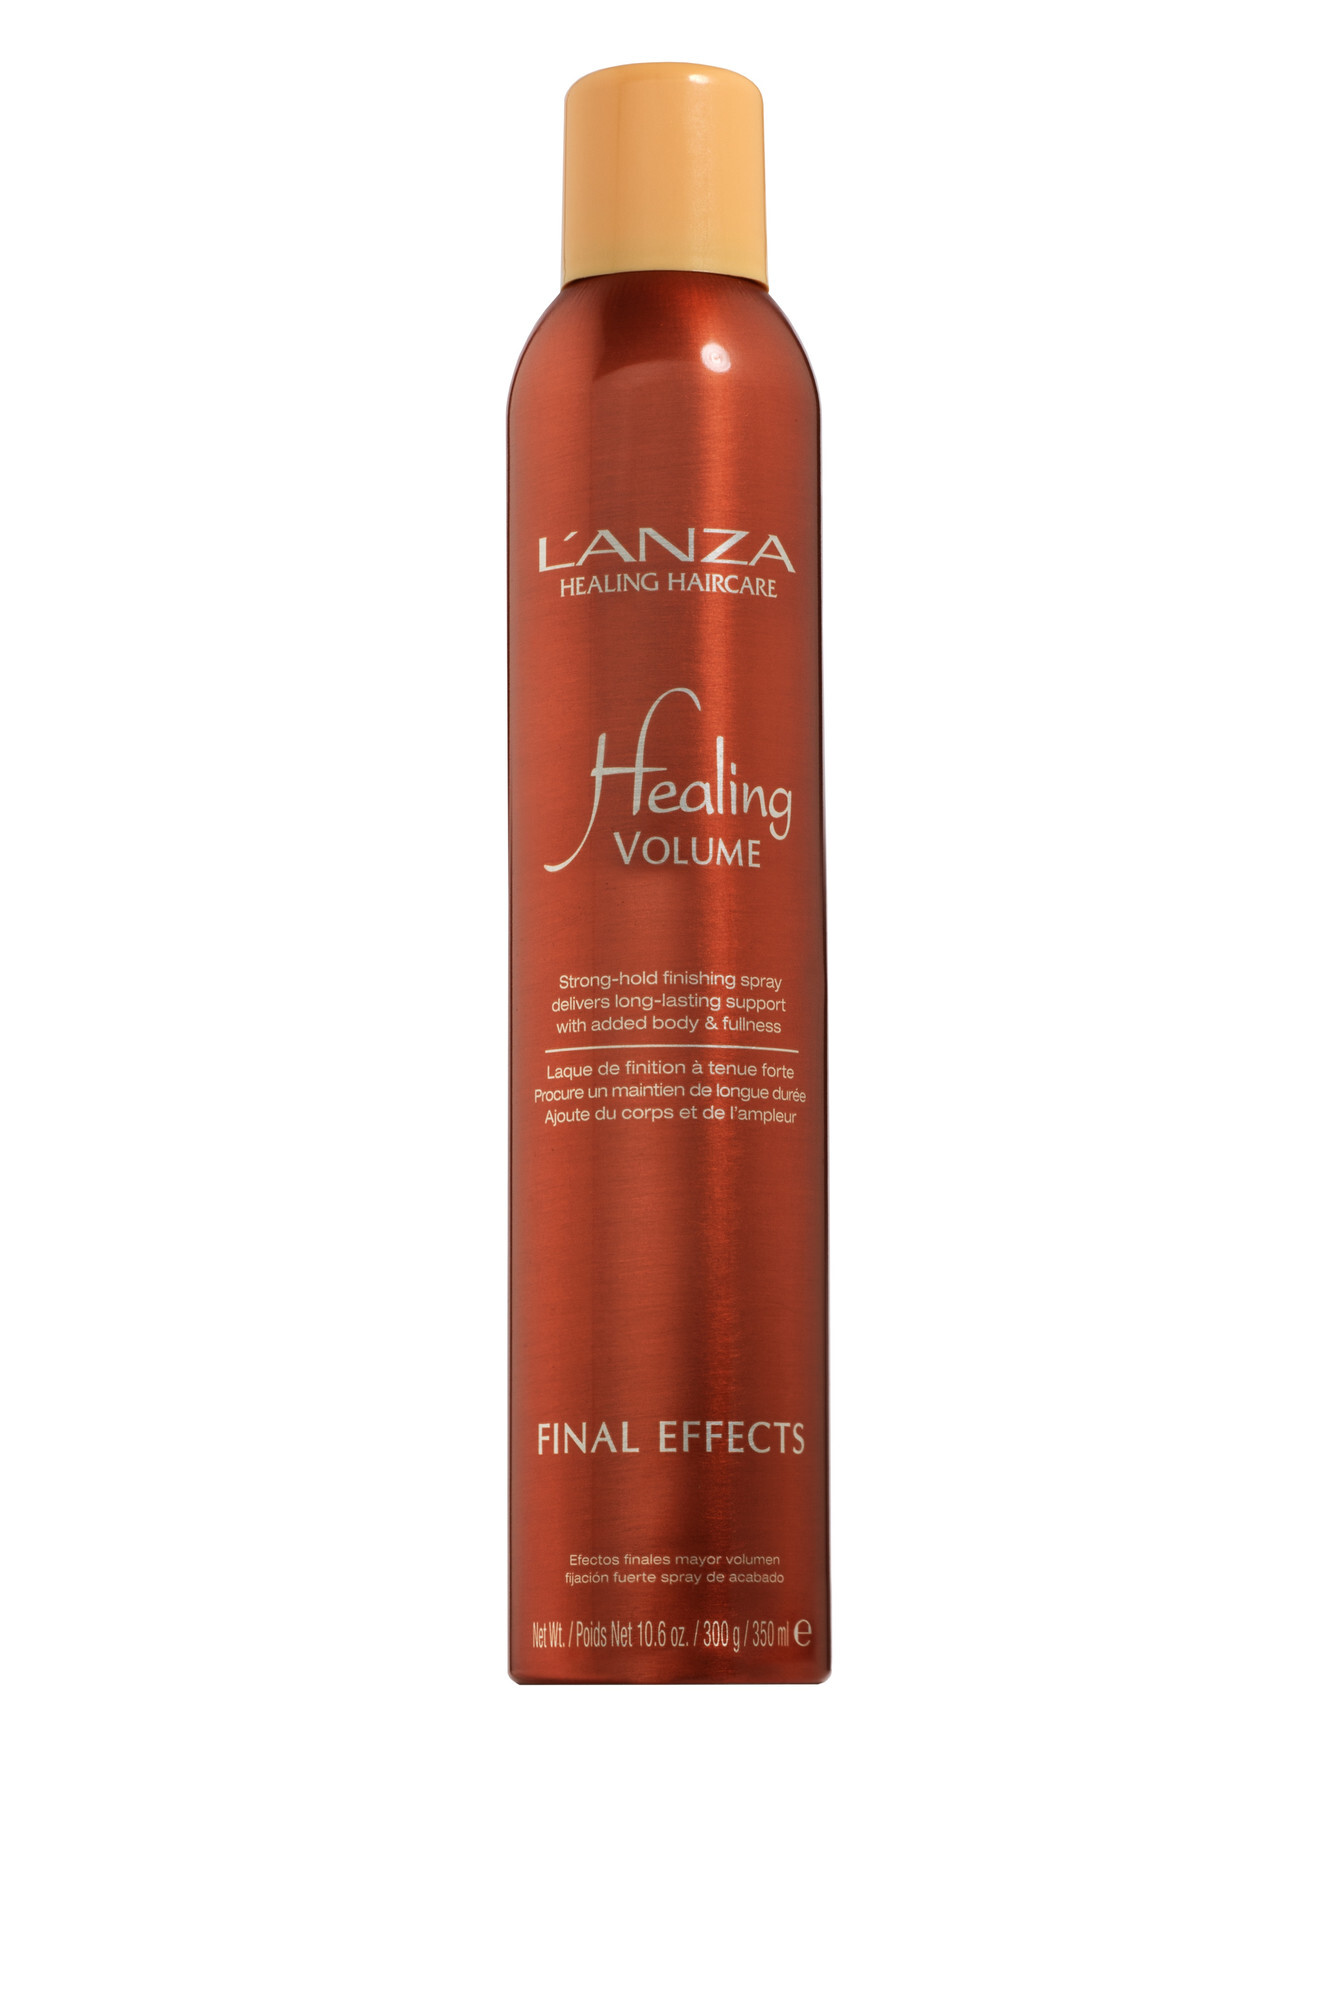 Lanza Healing Volume Final Effects 300 g